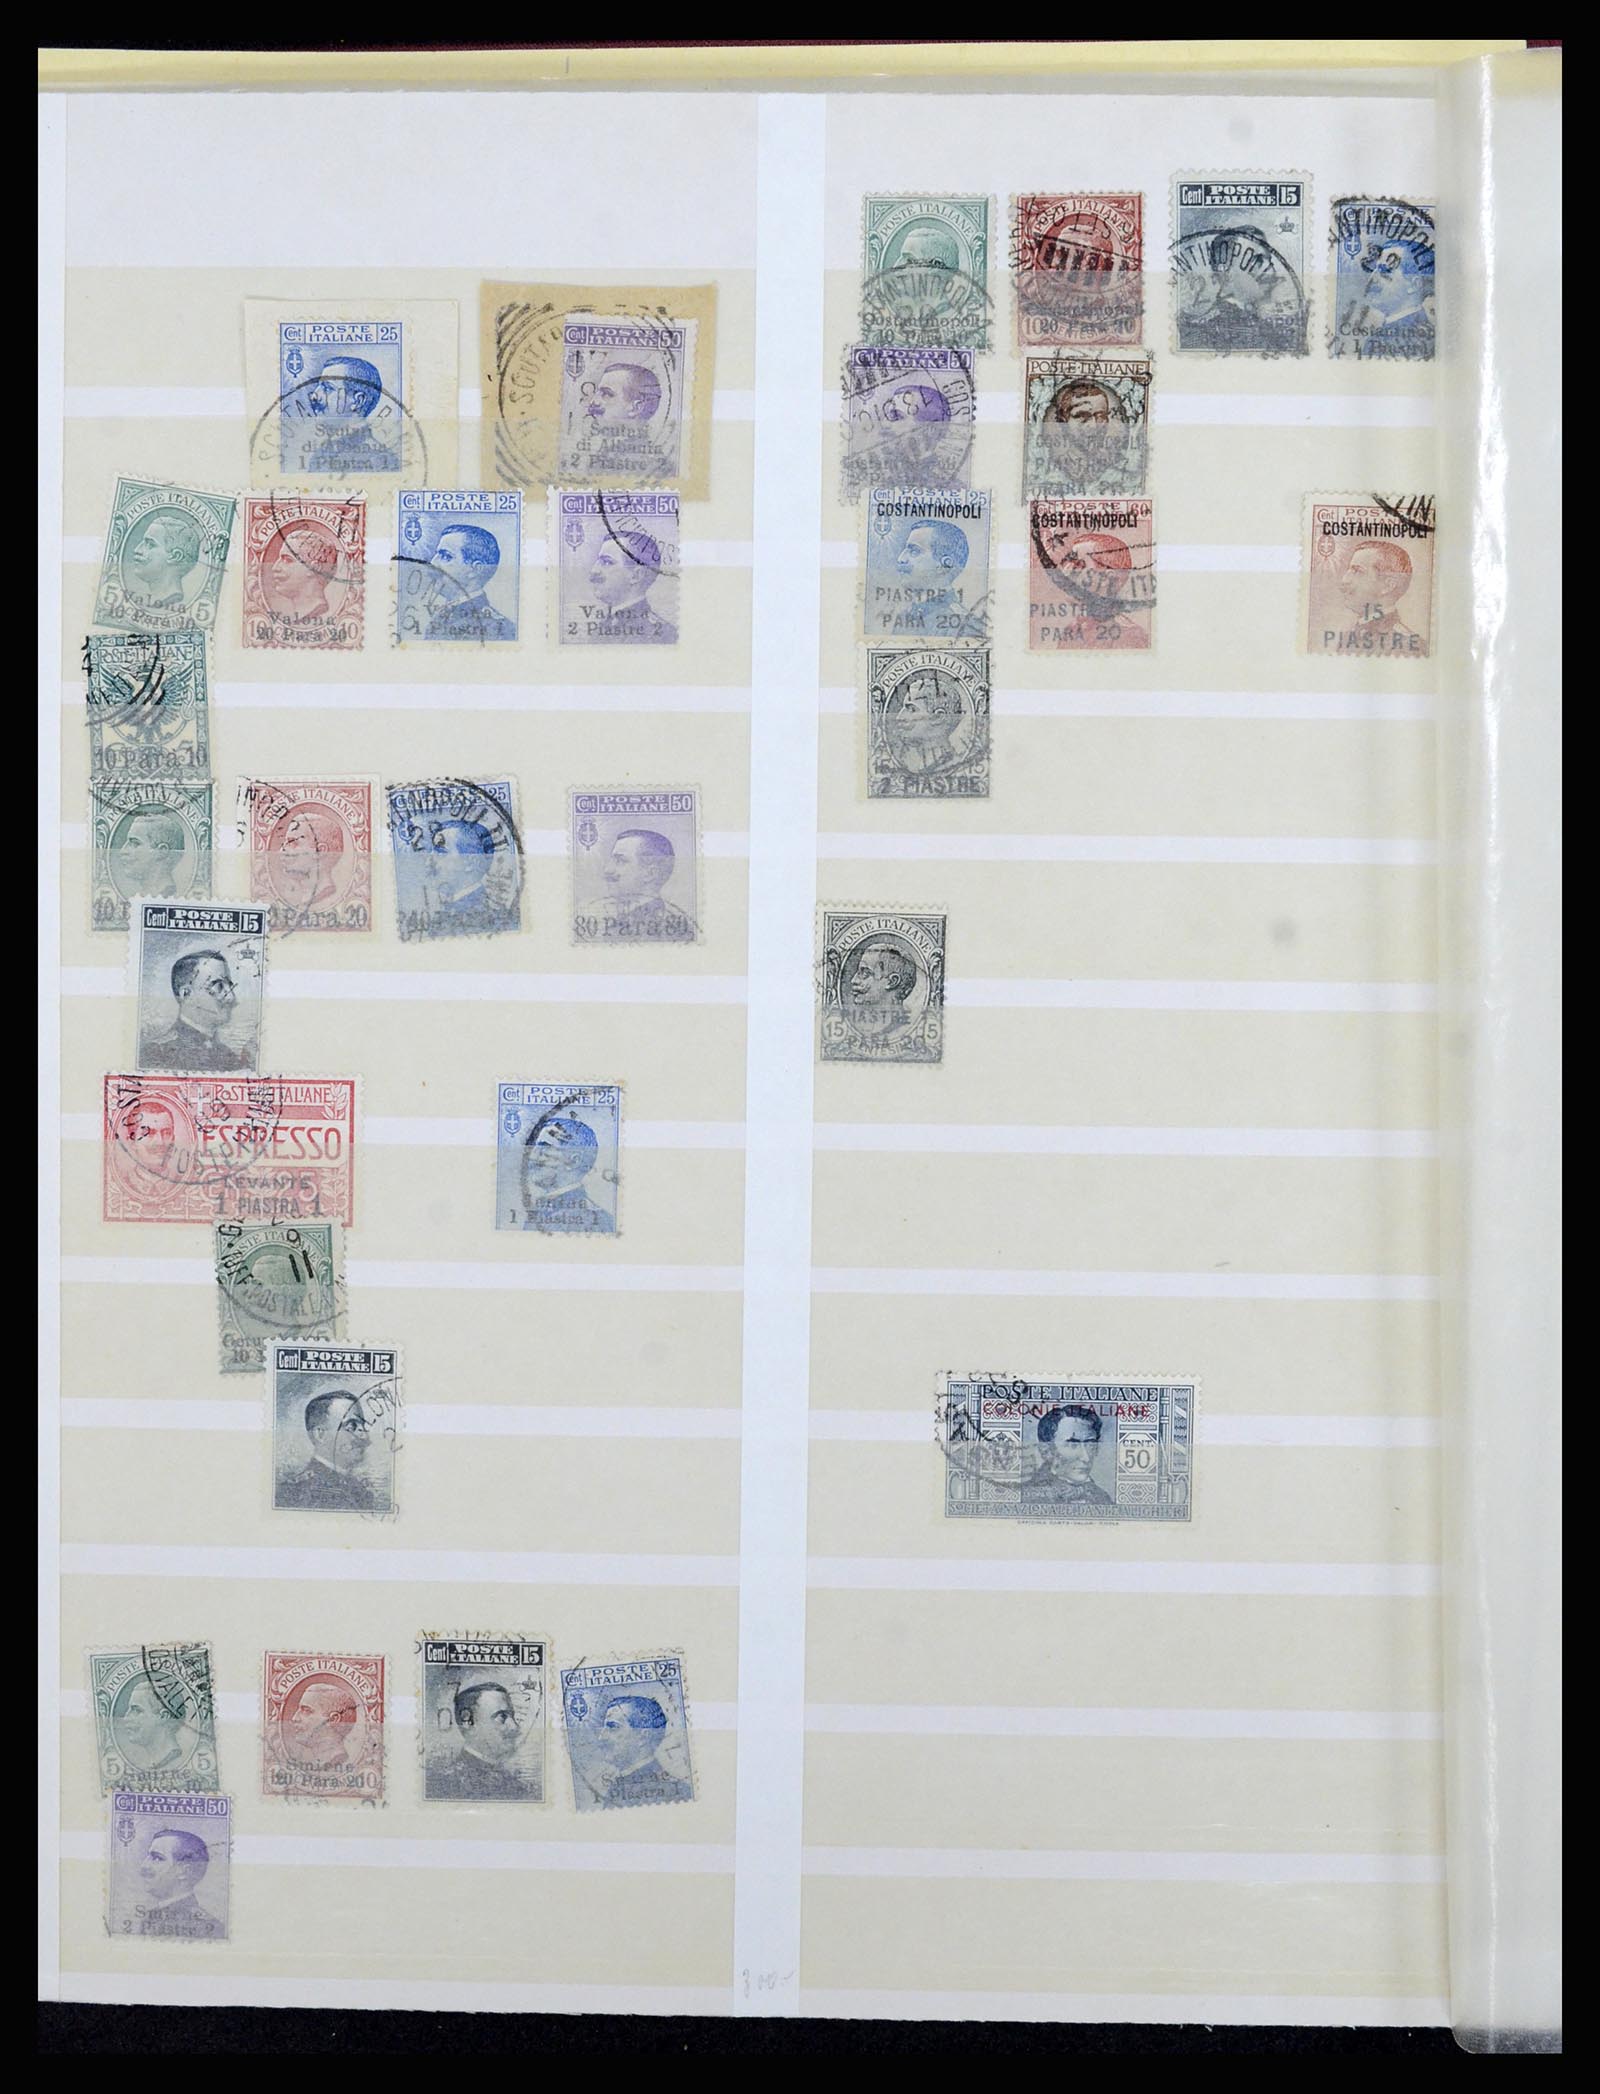 36577 084 - Stamp collection 36577 Italiaanse gebieden 1870-1940.